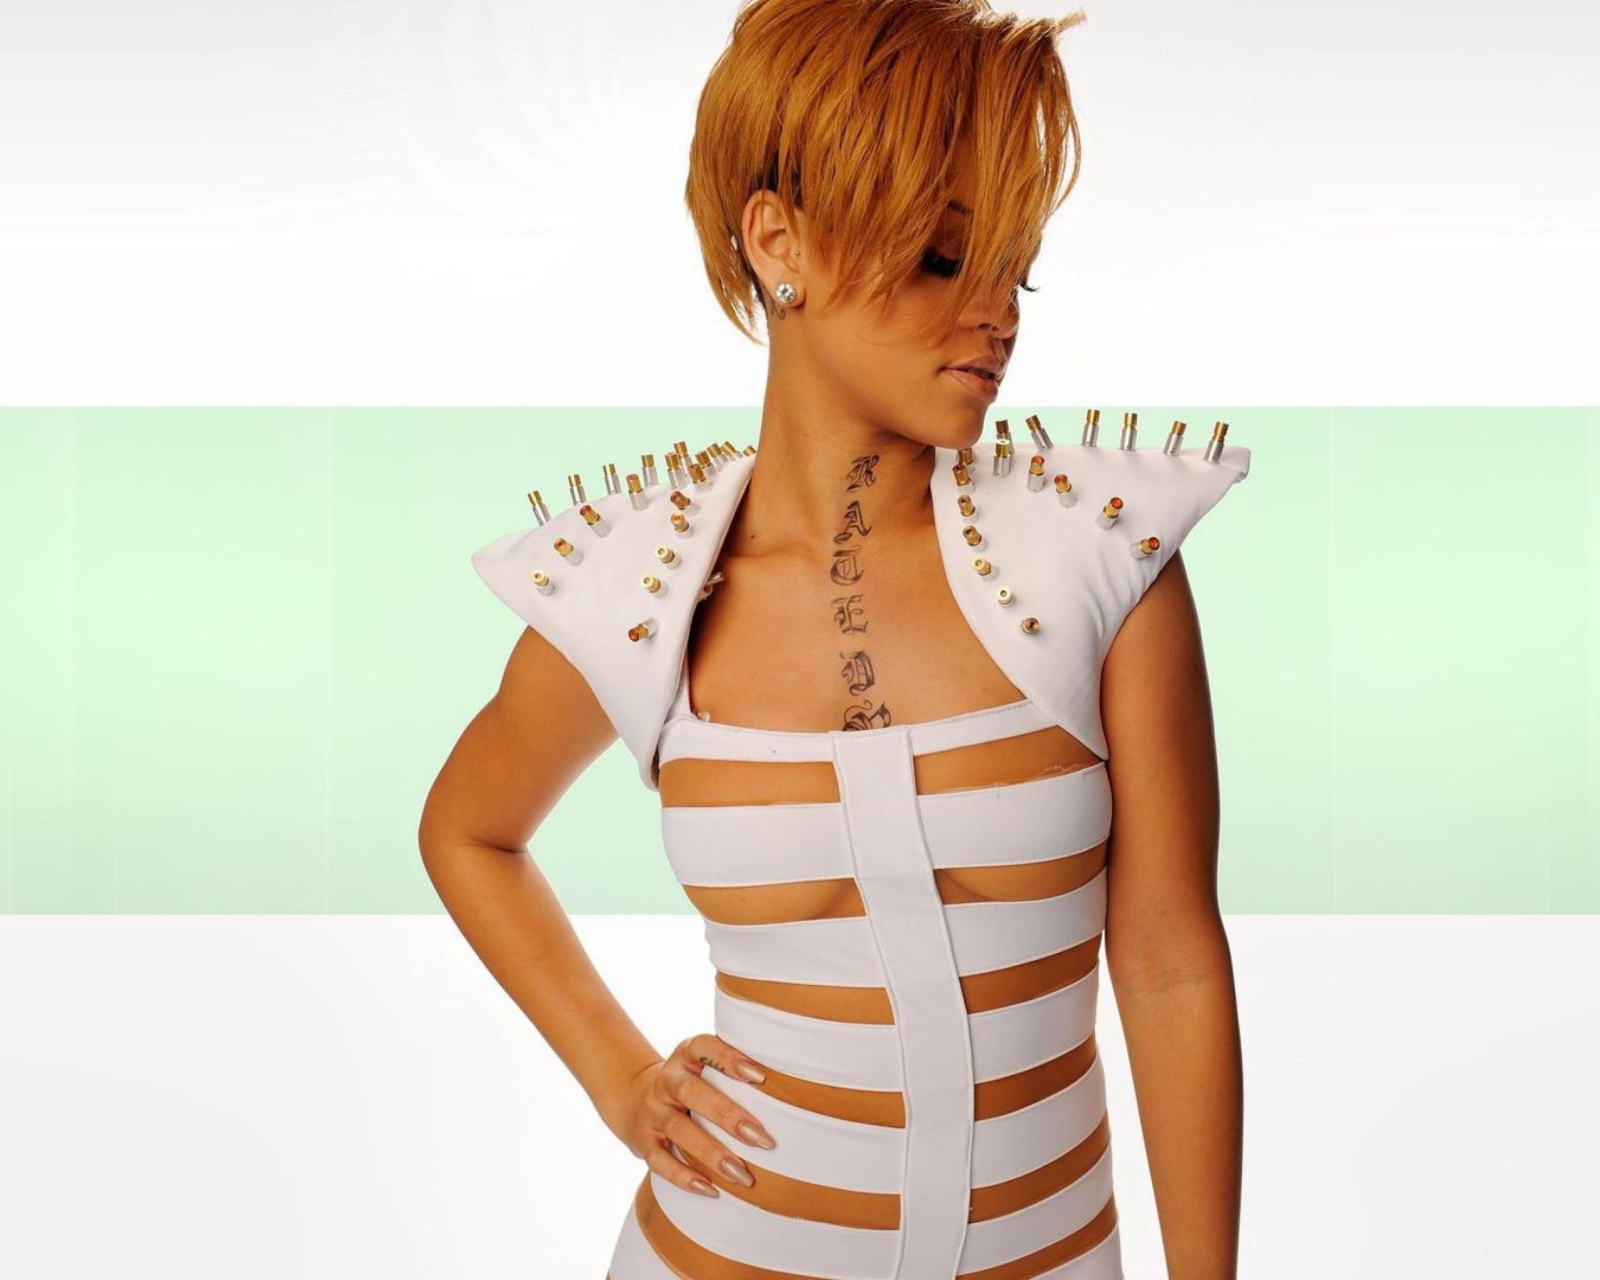 Sfondi Hot Rihanna In White Top 1600x1280